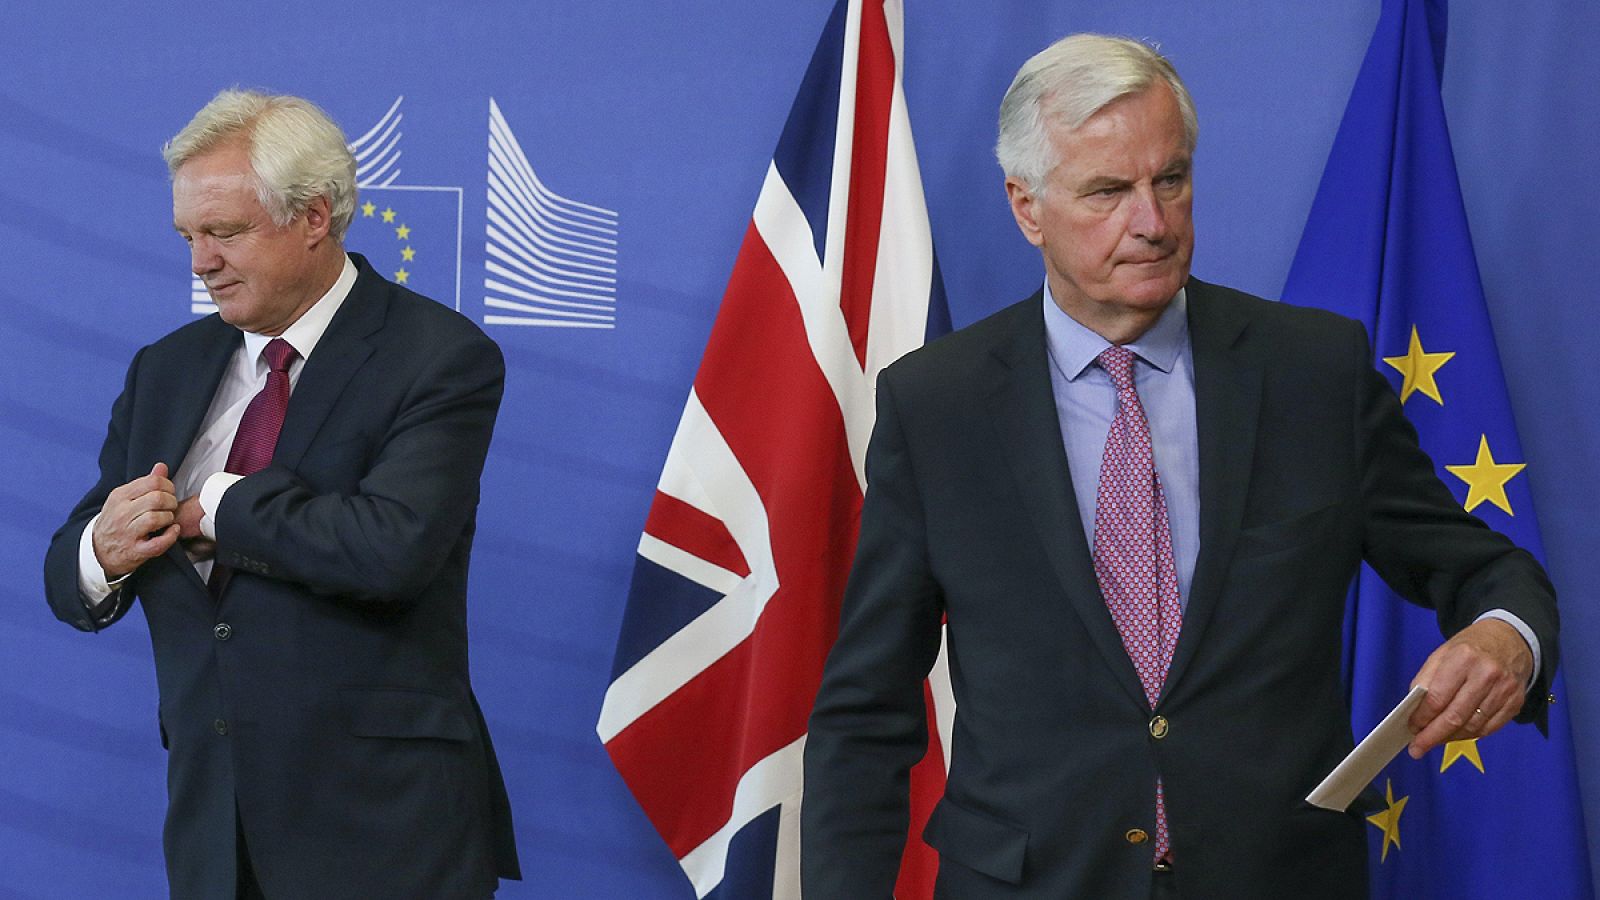 Primera reunión formal para acordar la salida de Reino Unido de la Unión Europea